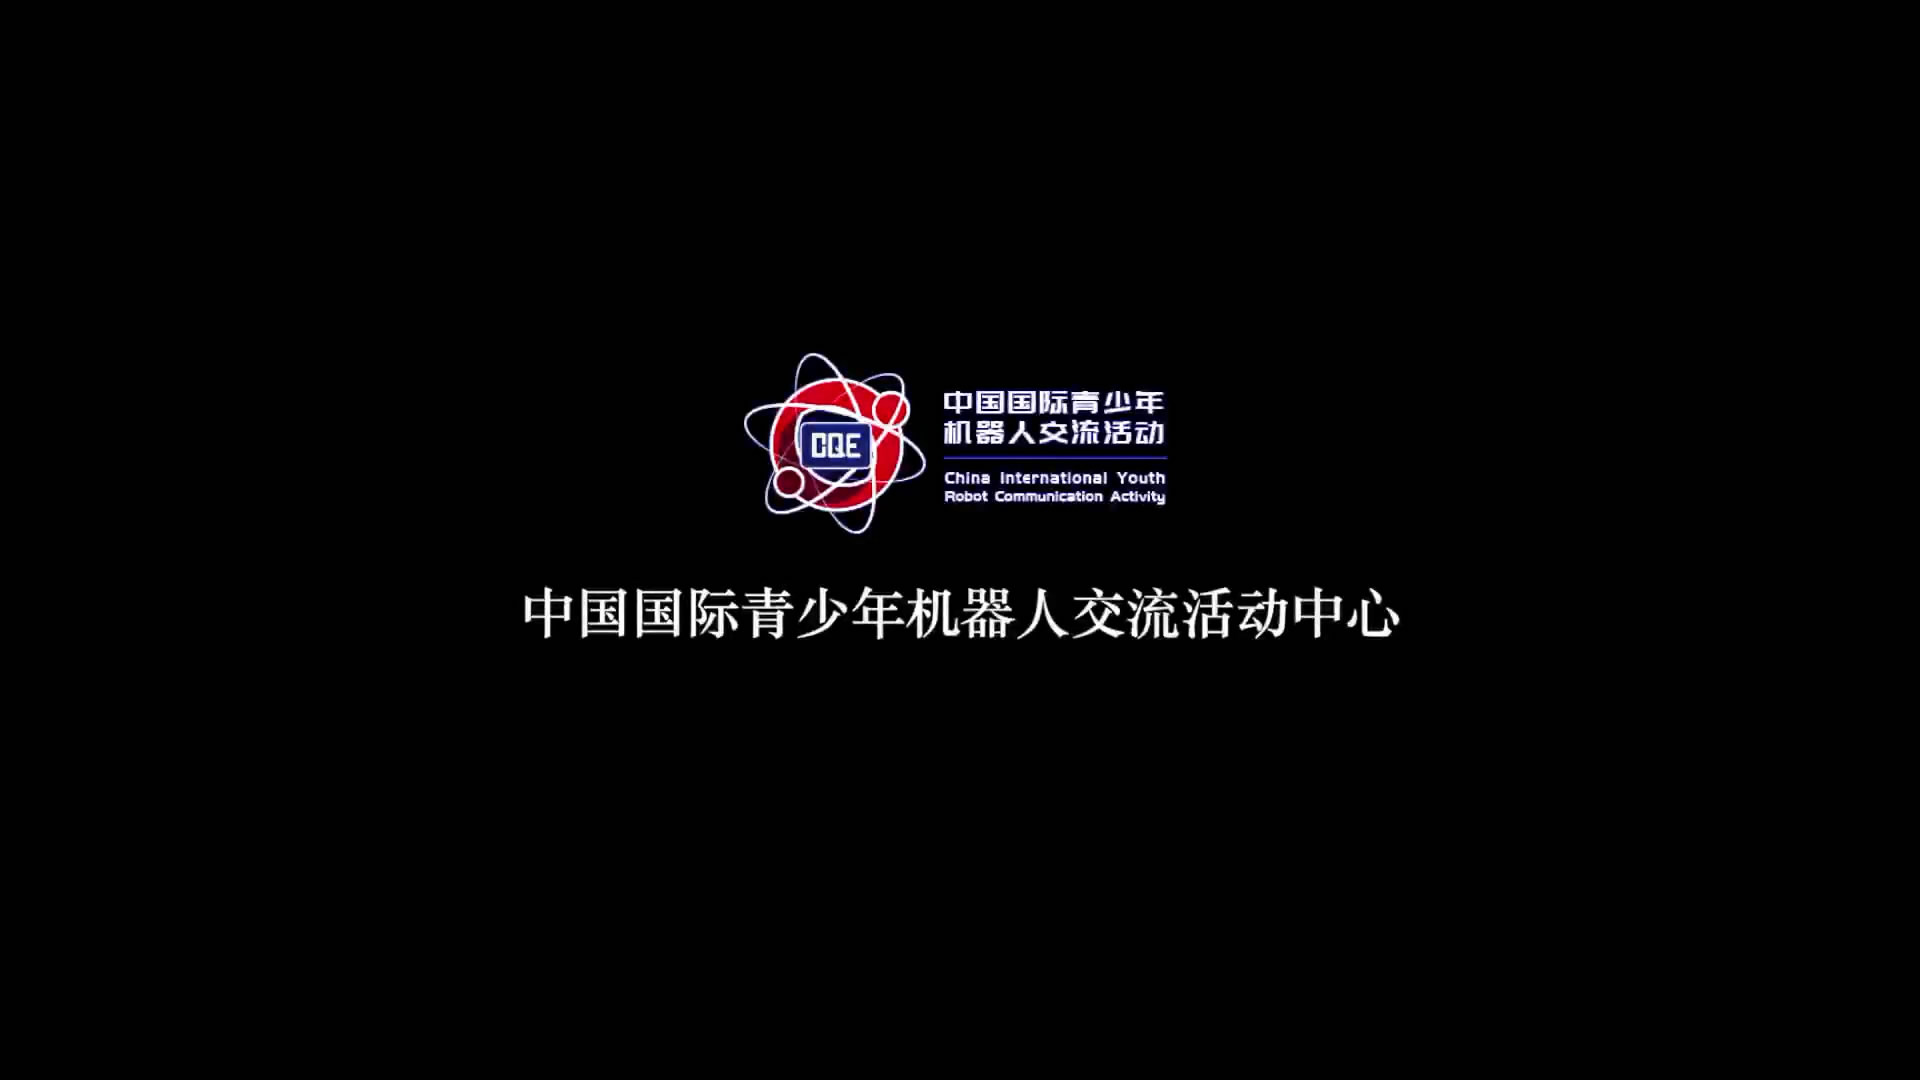 中国国际机器人交流中心品牌形象宣传片，拥抱世界，逐梦未来